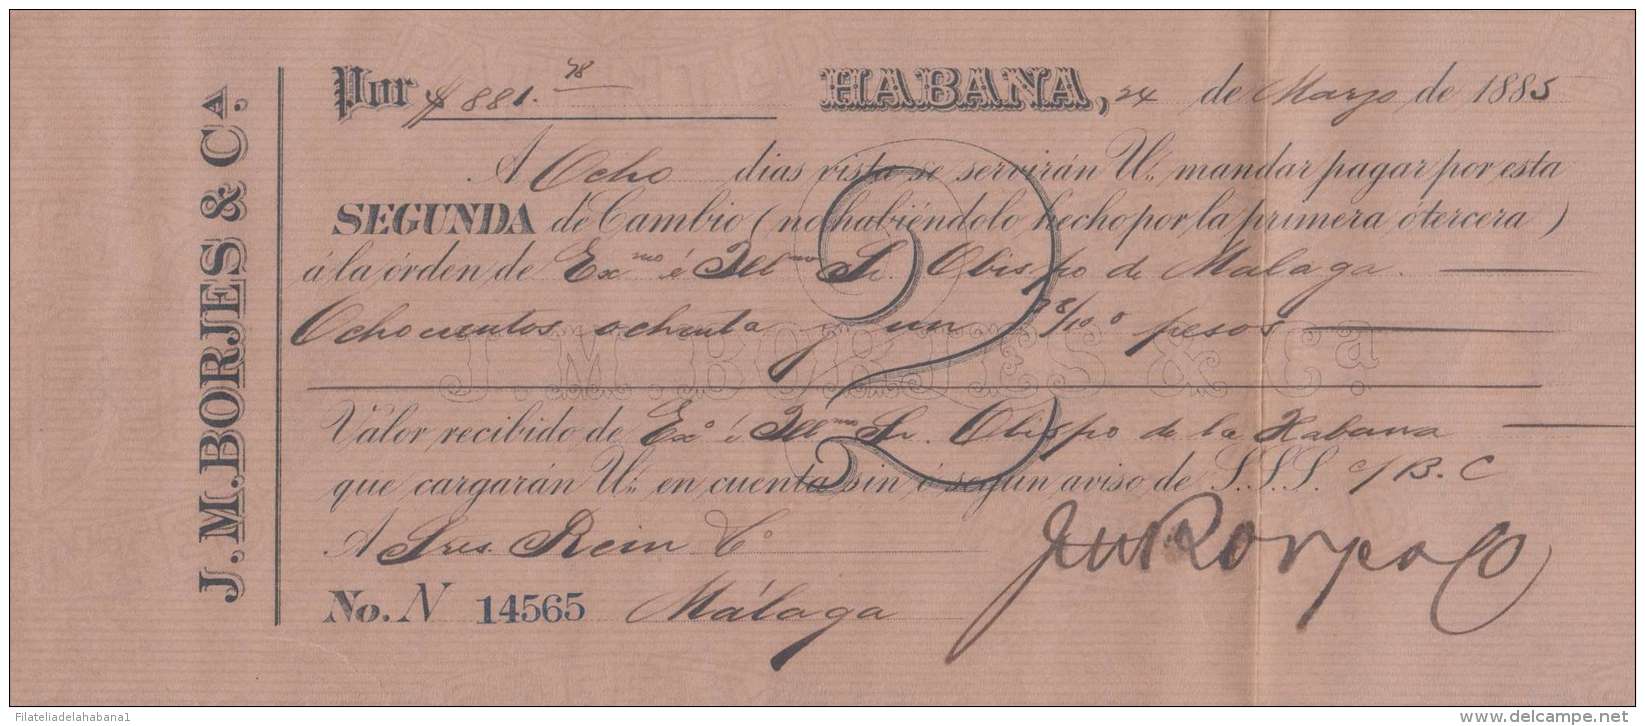 E6003 CUBA SPAIN ESPAÑA COLONIES. 1885. HAVA. BANK CHECK N. BORGES. - Cheques & Traveler's Cheques